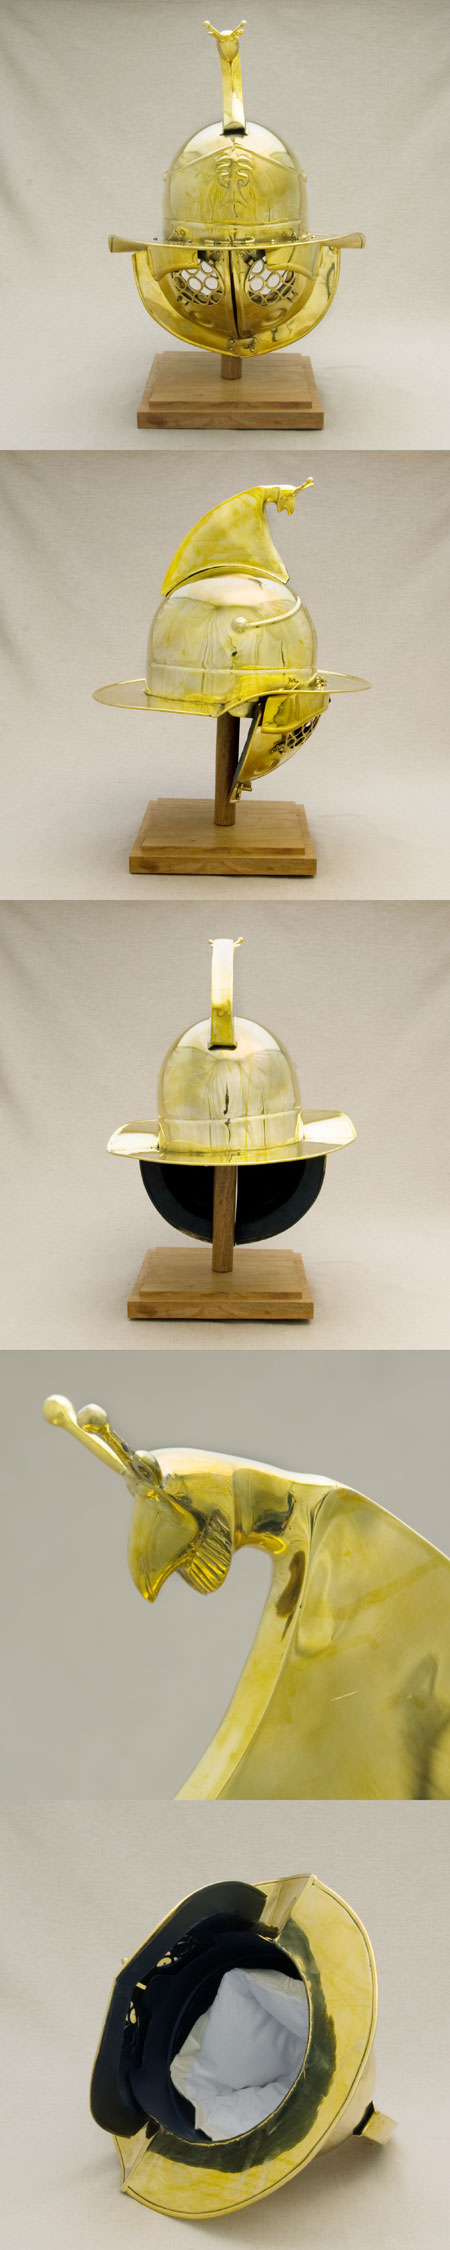 Römer Helm der Gladiatoren (Thraex), Deepeeka